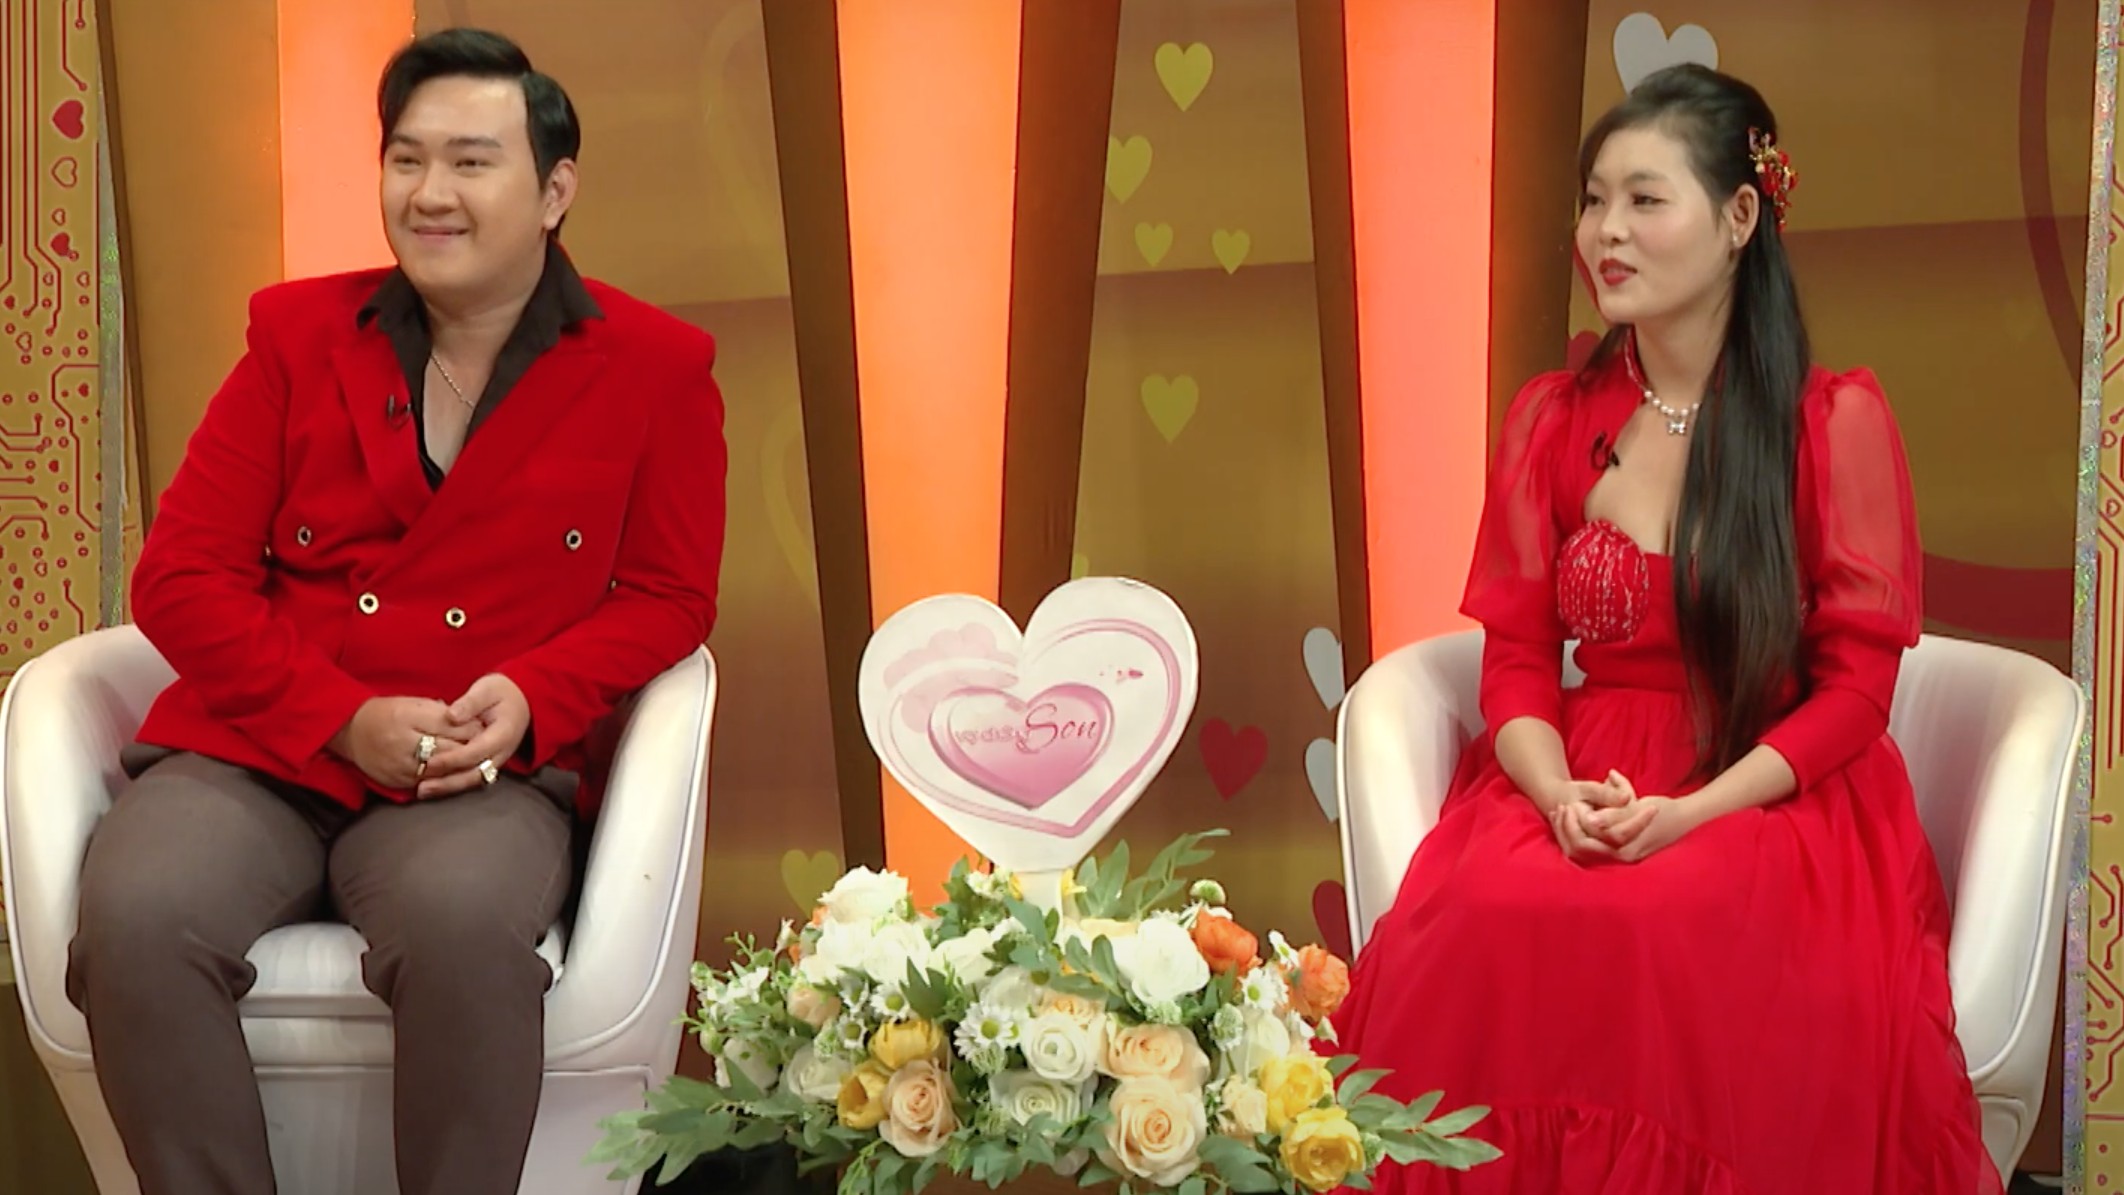 Ca - nhạc sĩ Hoàng Tuấn Minh đòi cưới vợ sau 1 ngày gặp gỡ khiến MC Hồng Vân - Quốc Thuận “đứng hình”